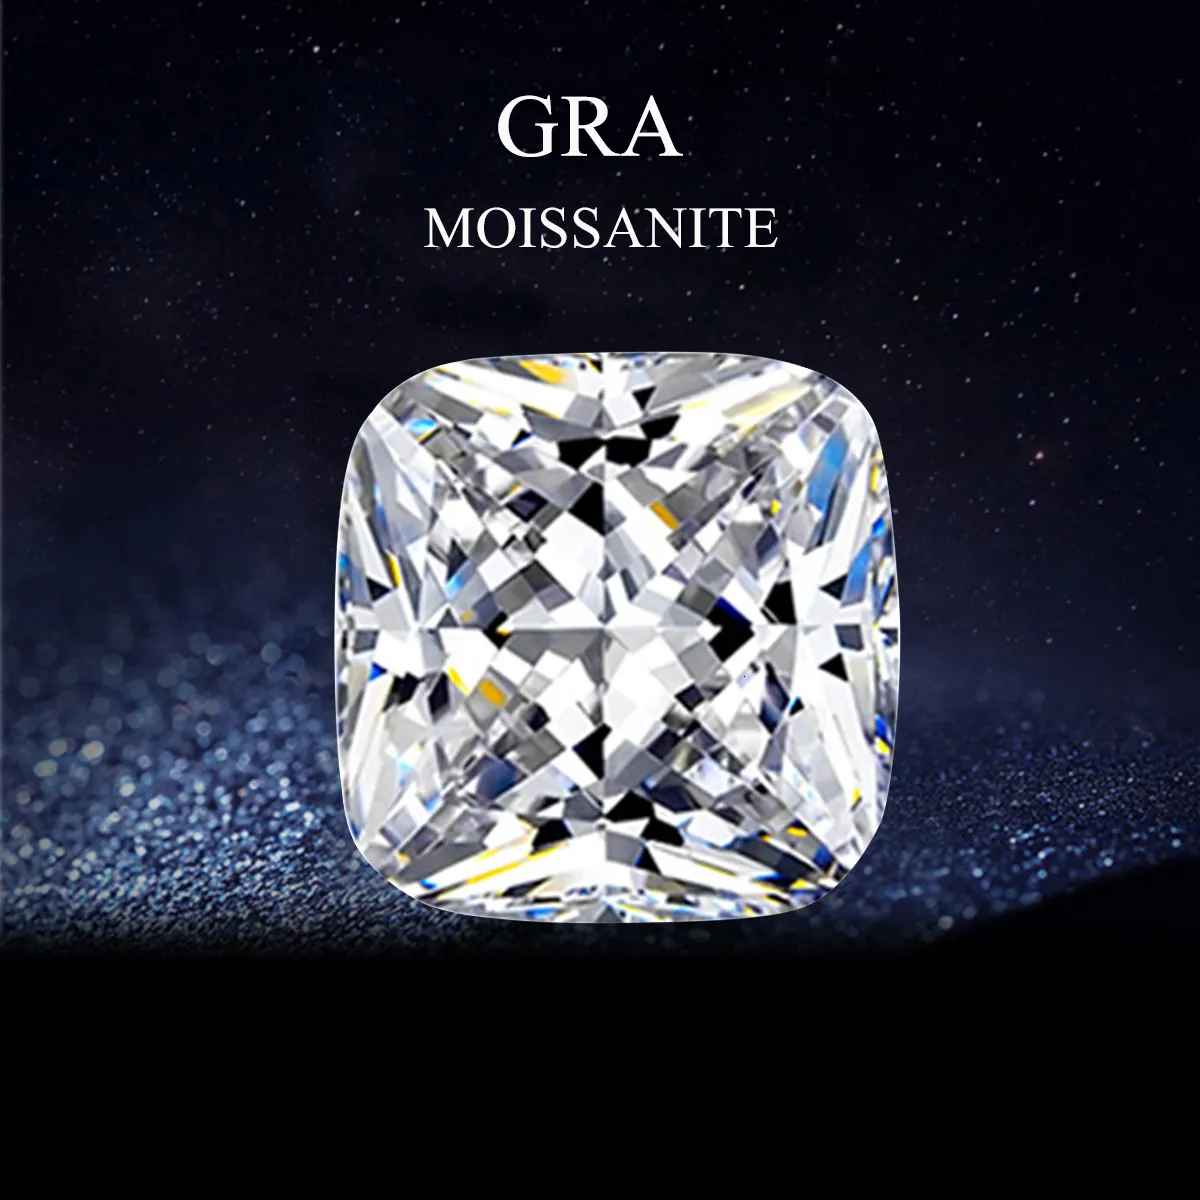 Aktion für lose Diamanten, Kissen, brillante D-Farbe, im Labor gezüchtete Diamanten, ausgezeichnetes GRA-Zertifikat, Stein 230607